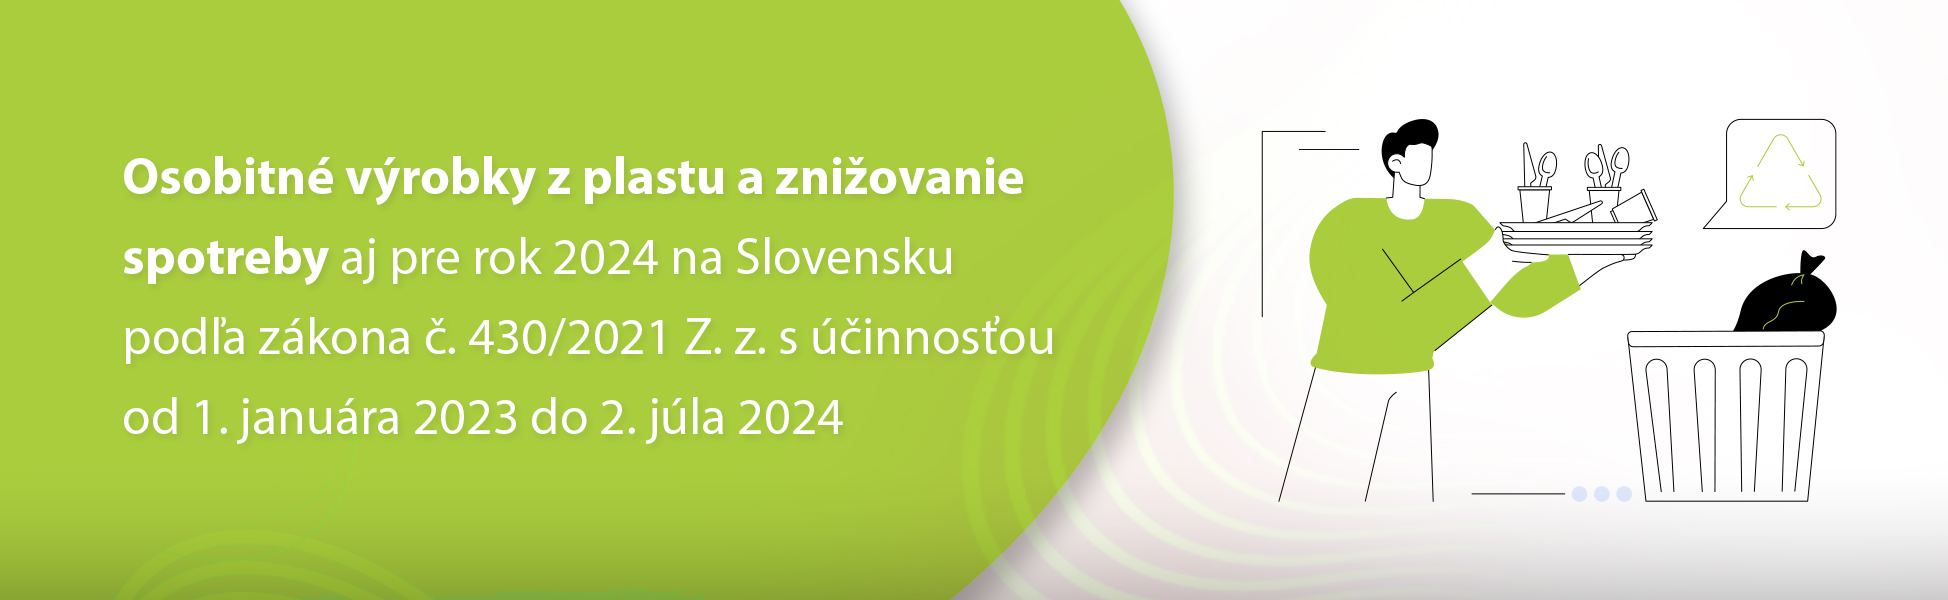 Osobitn vrobky z plastu a zniovanie spotreby aj pre rok 2024 na Slovensku poda zkona . 430/2021 Z. z. s innosou od 1. janura 2023 do 2. jla 2024